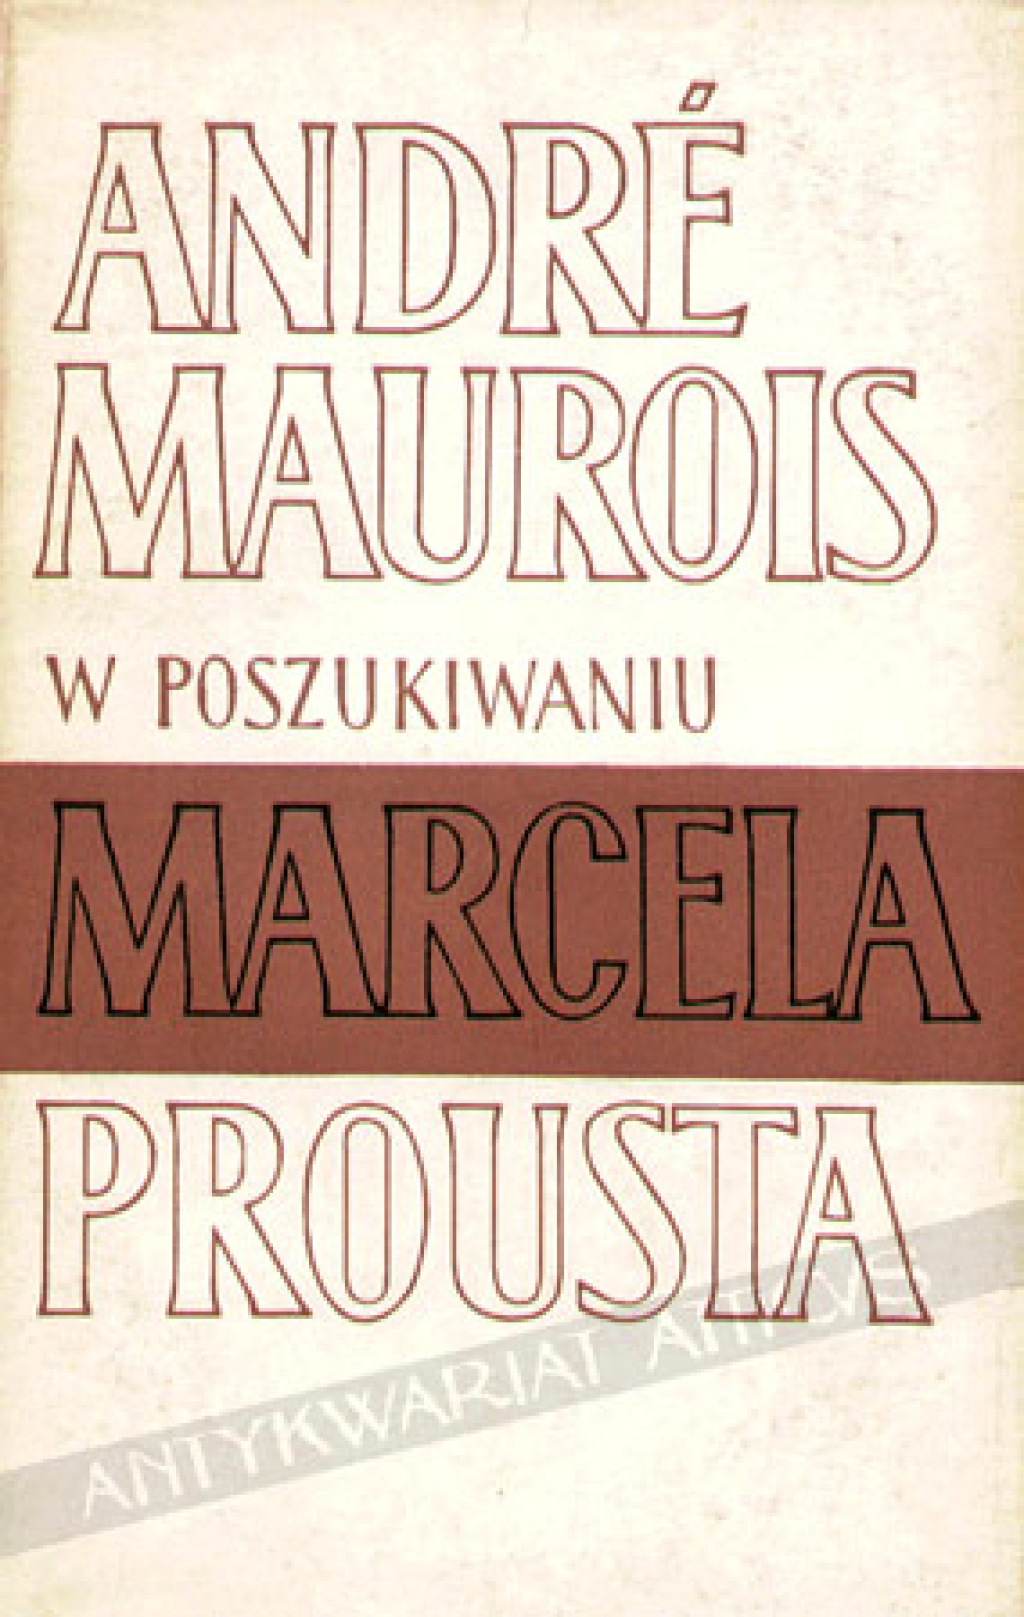 W poszukiwaniu Marcela Prousta